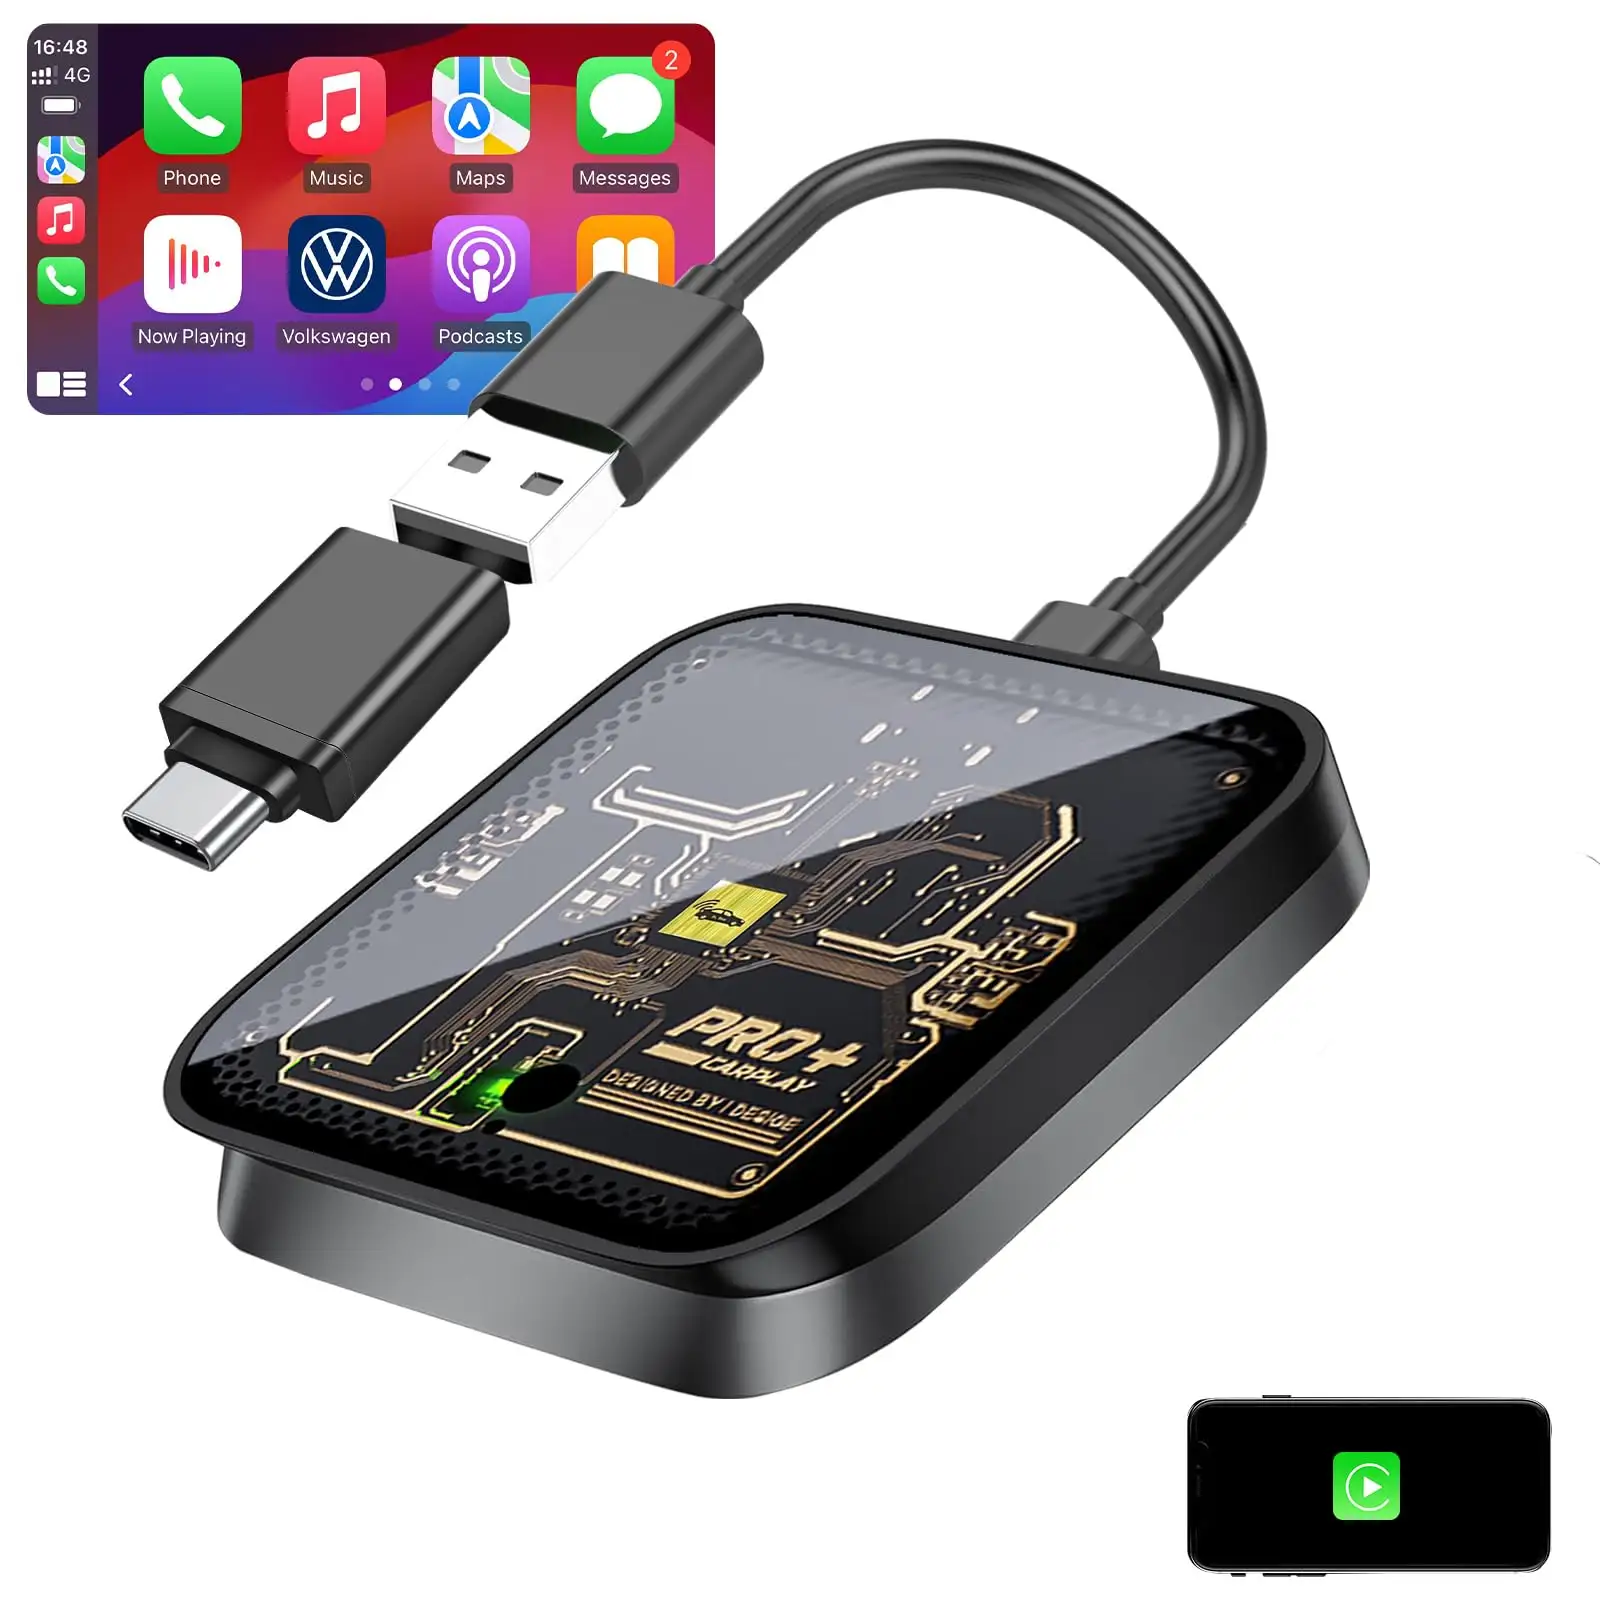 Phoebus bağlantı taşınabilir Carplay kablosuz adaptör kaynağı için zincir Android kutusu araba mini cihaz kablosuz carplay dongle